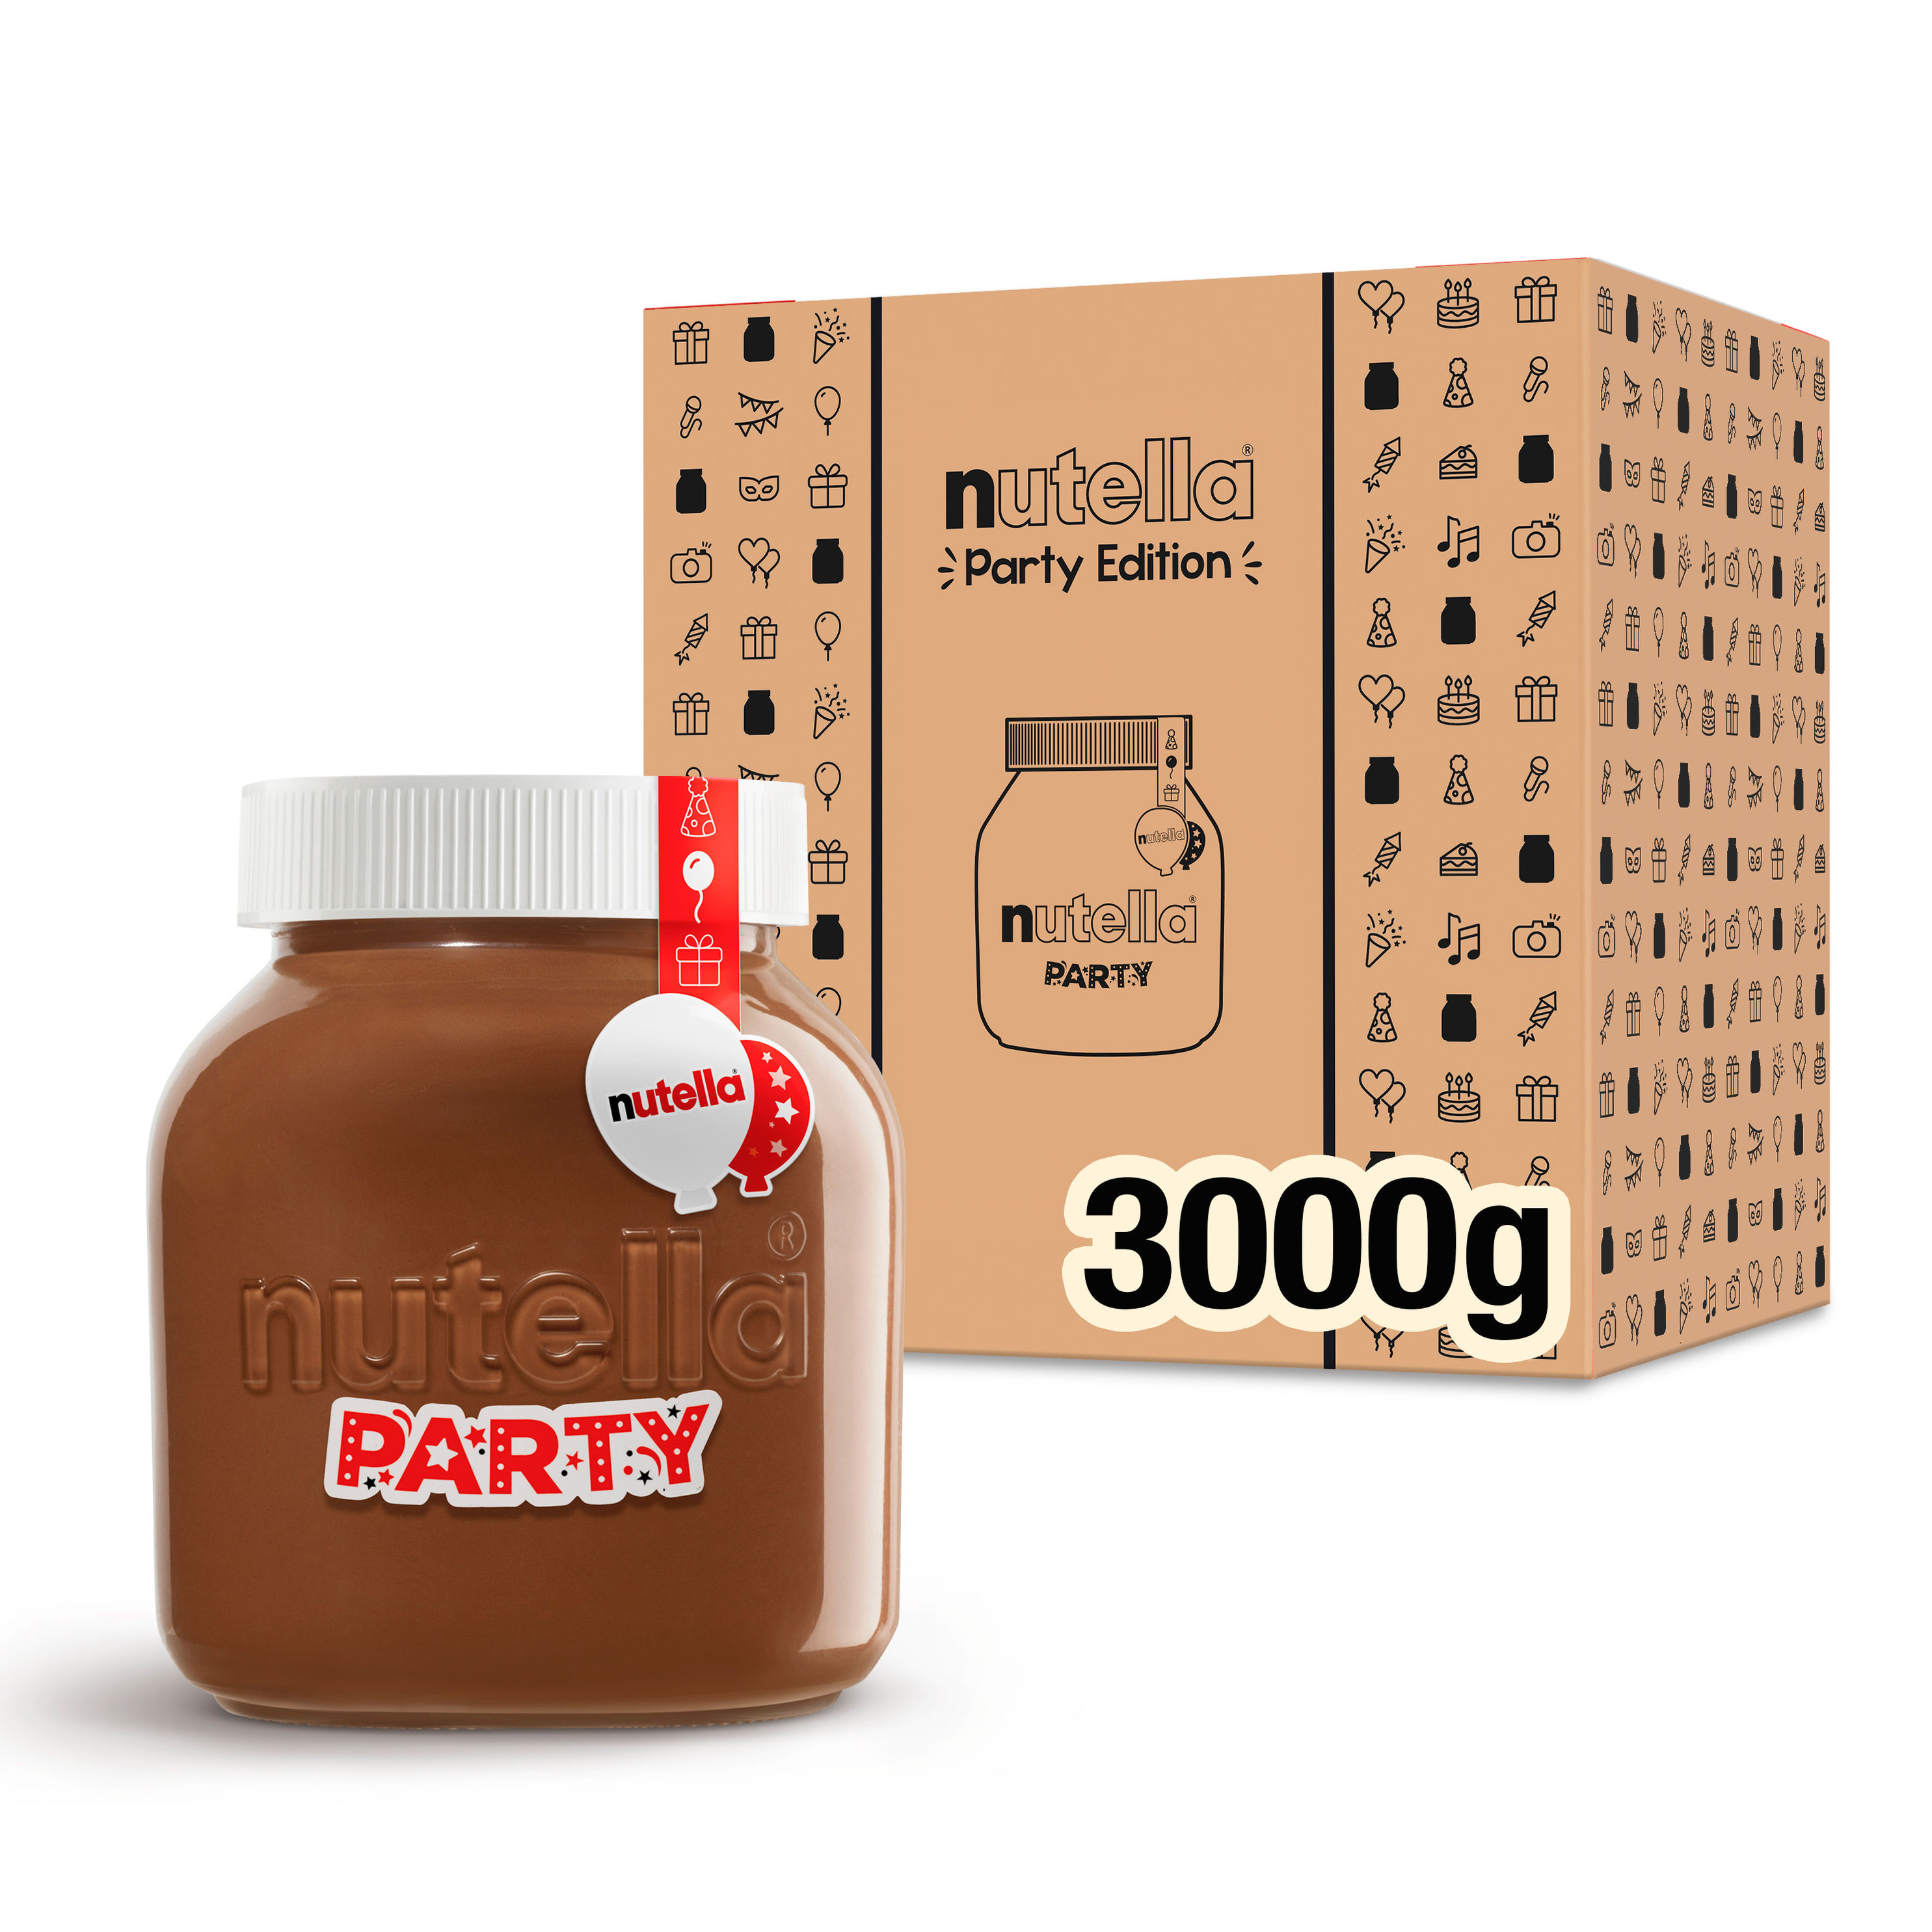 nutella Party Edition 3 kg Glas jetzt bei Weltbild.ch bestellen